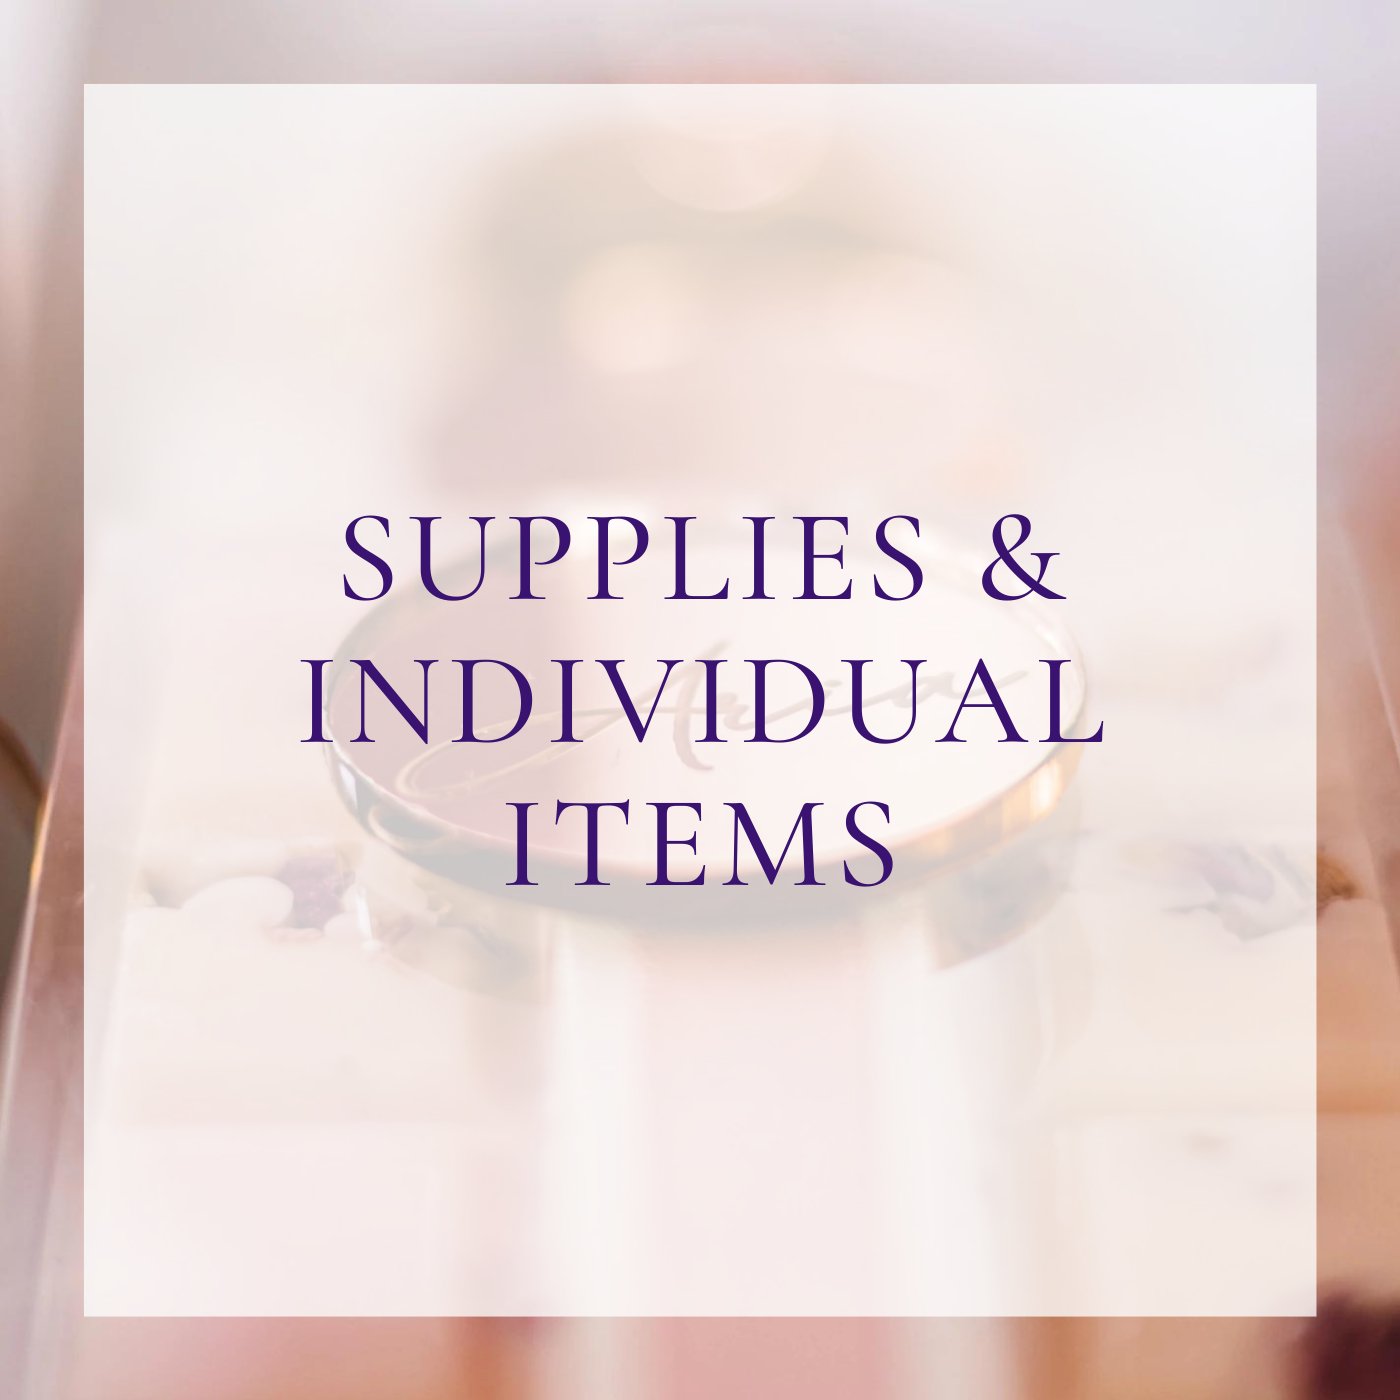 Supplies & Individual Items